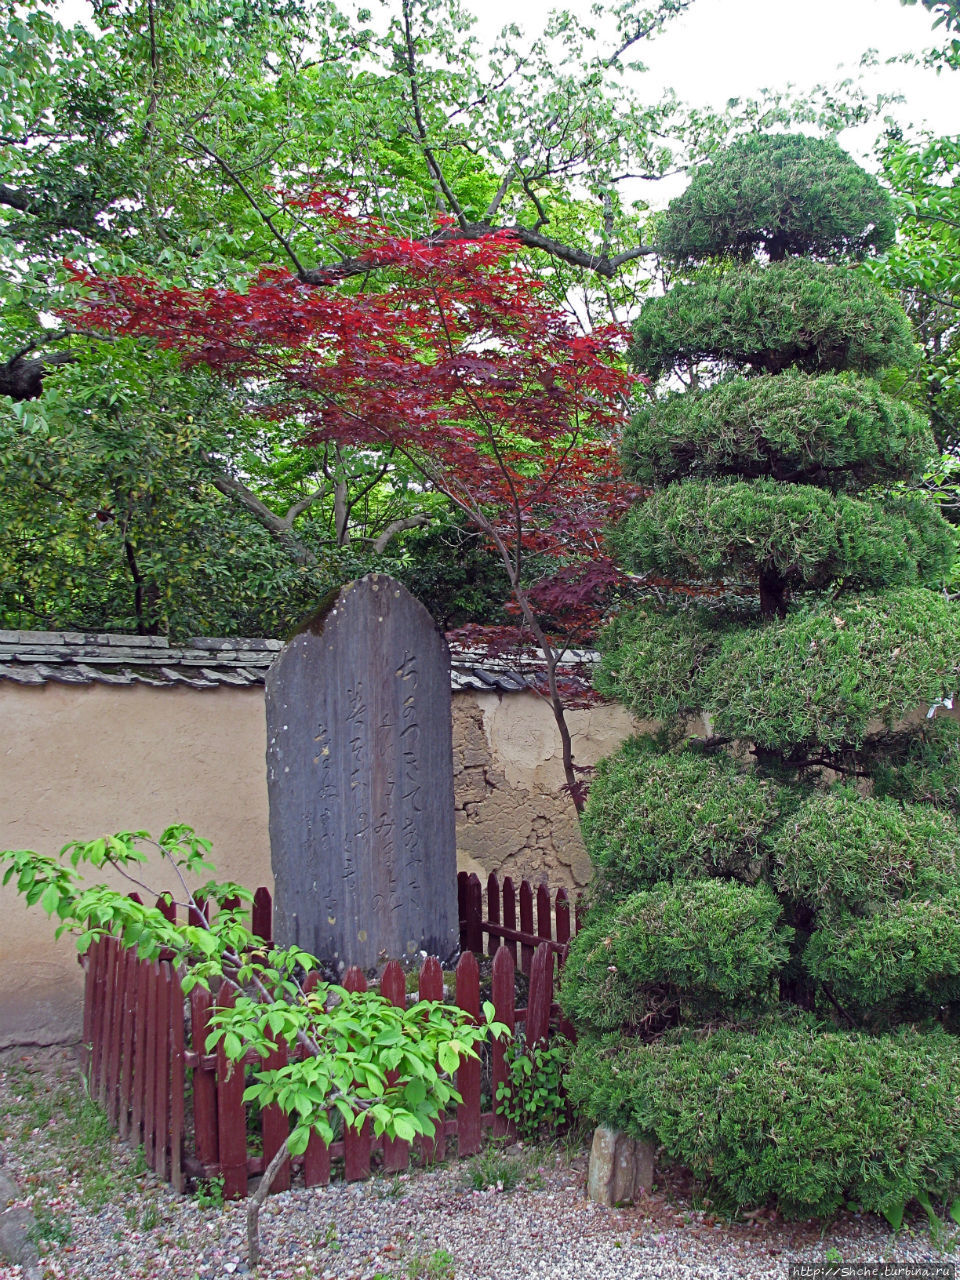 Син-Якуси-дзи храм Нара, Япония